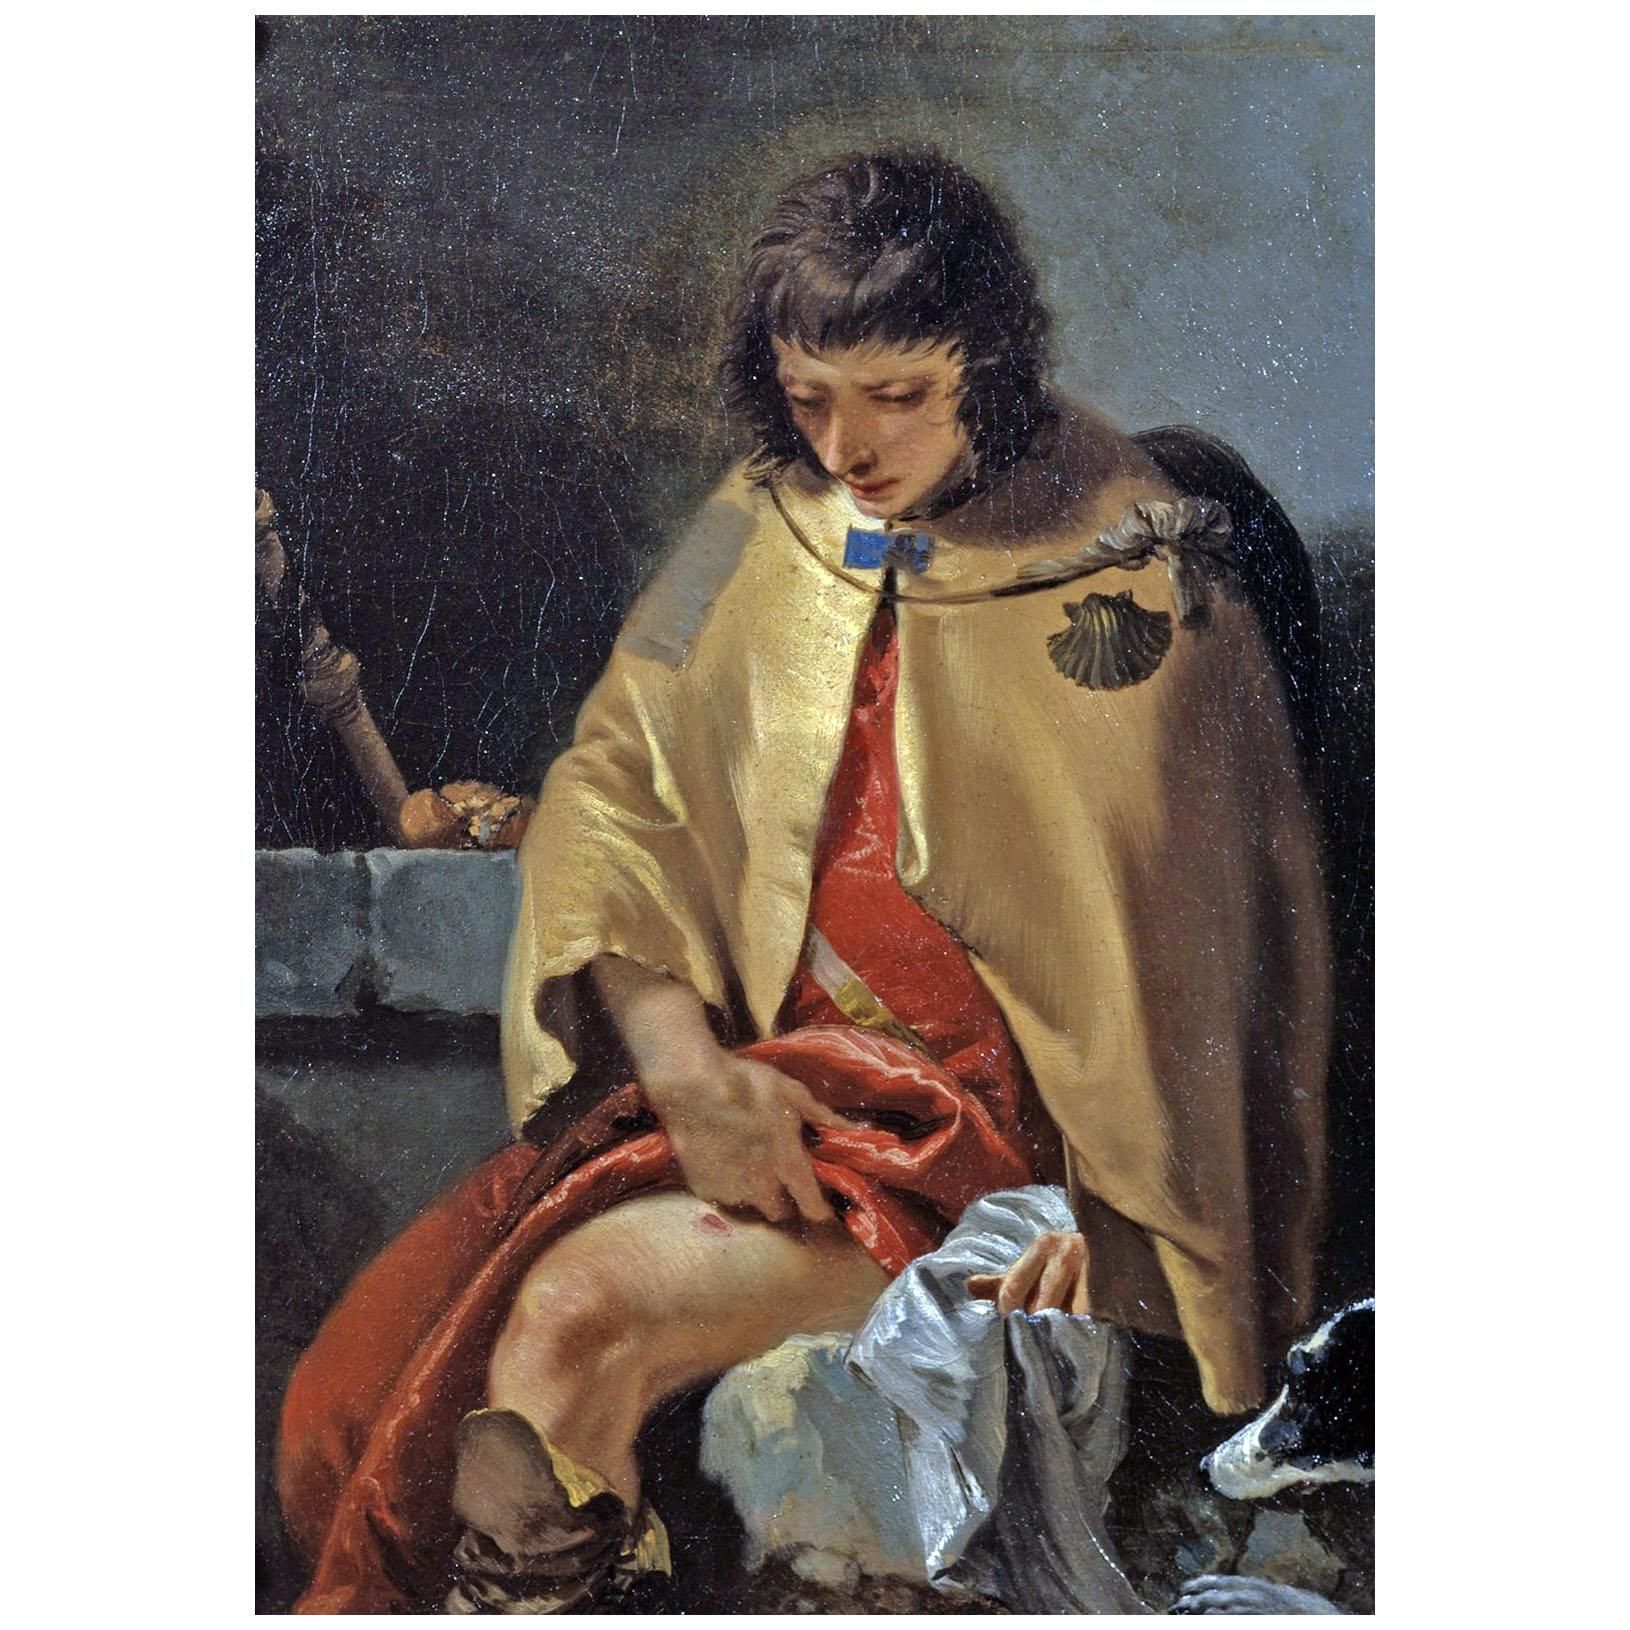 Giovanni Battista Tiepolo. San Rocco. 1730-1735. Courtauld Institute London